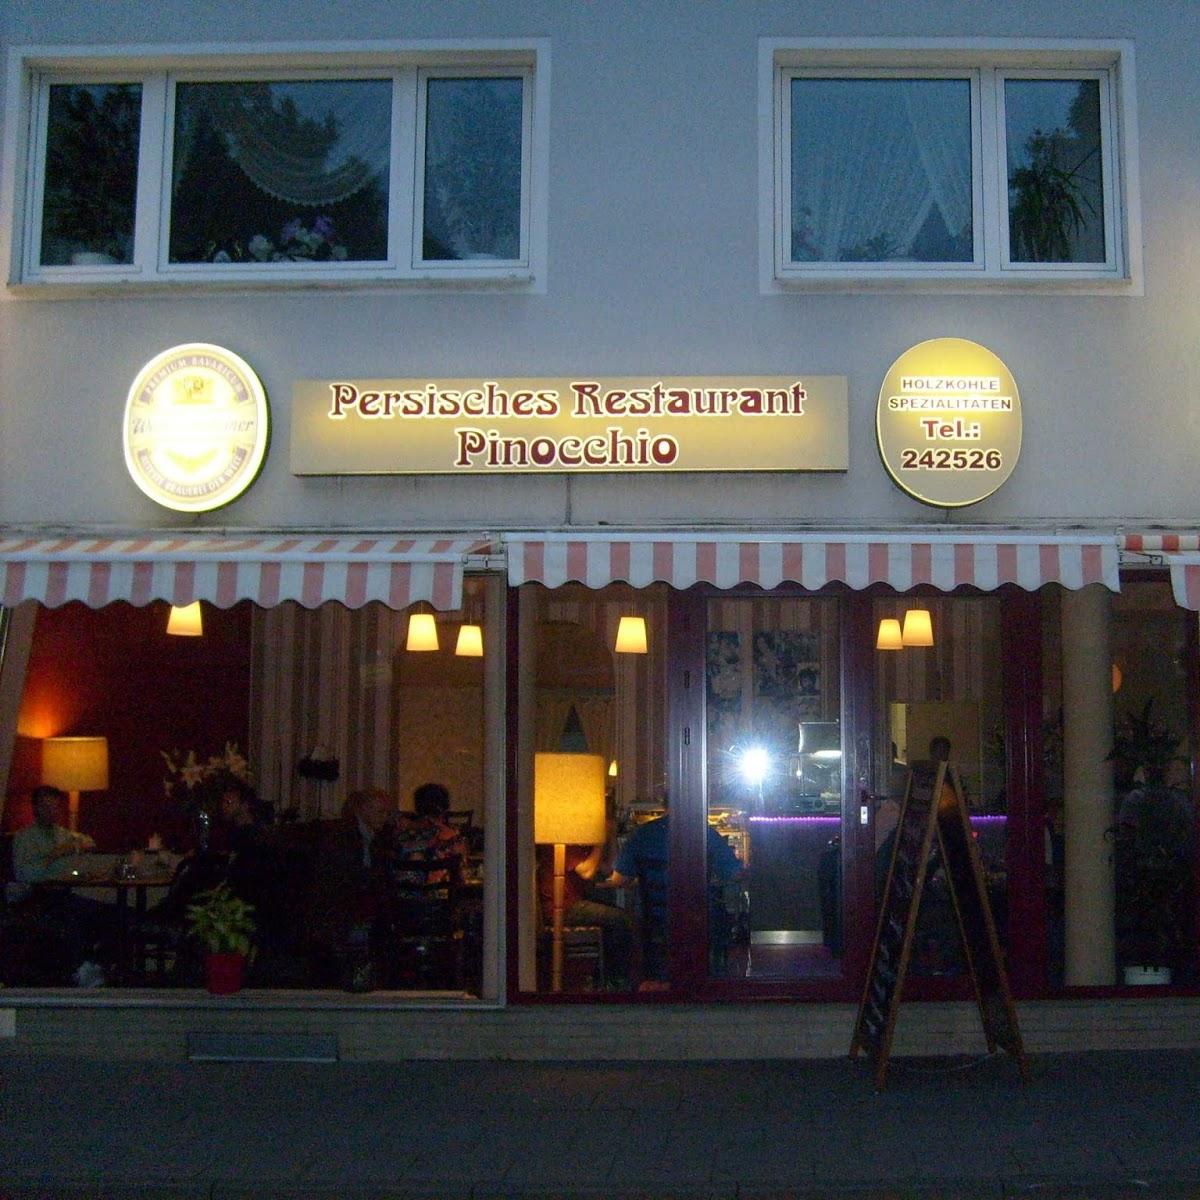 Restaurant "Pinocchio" in Köln